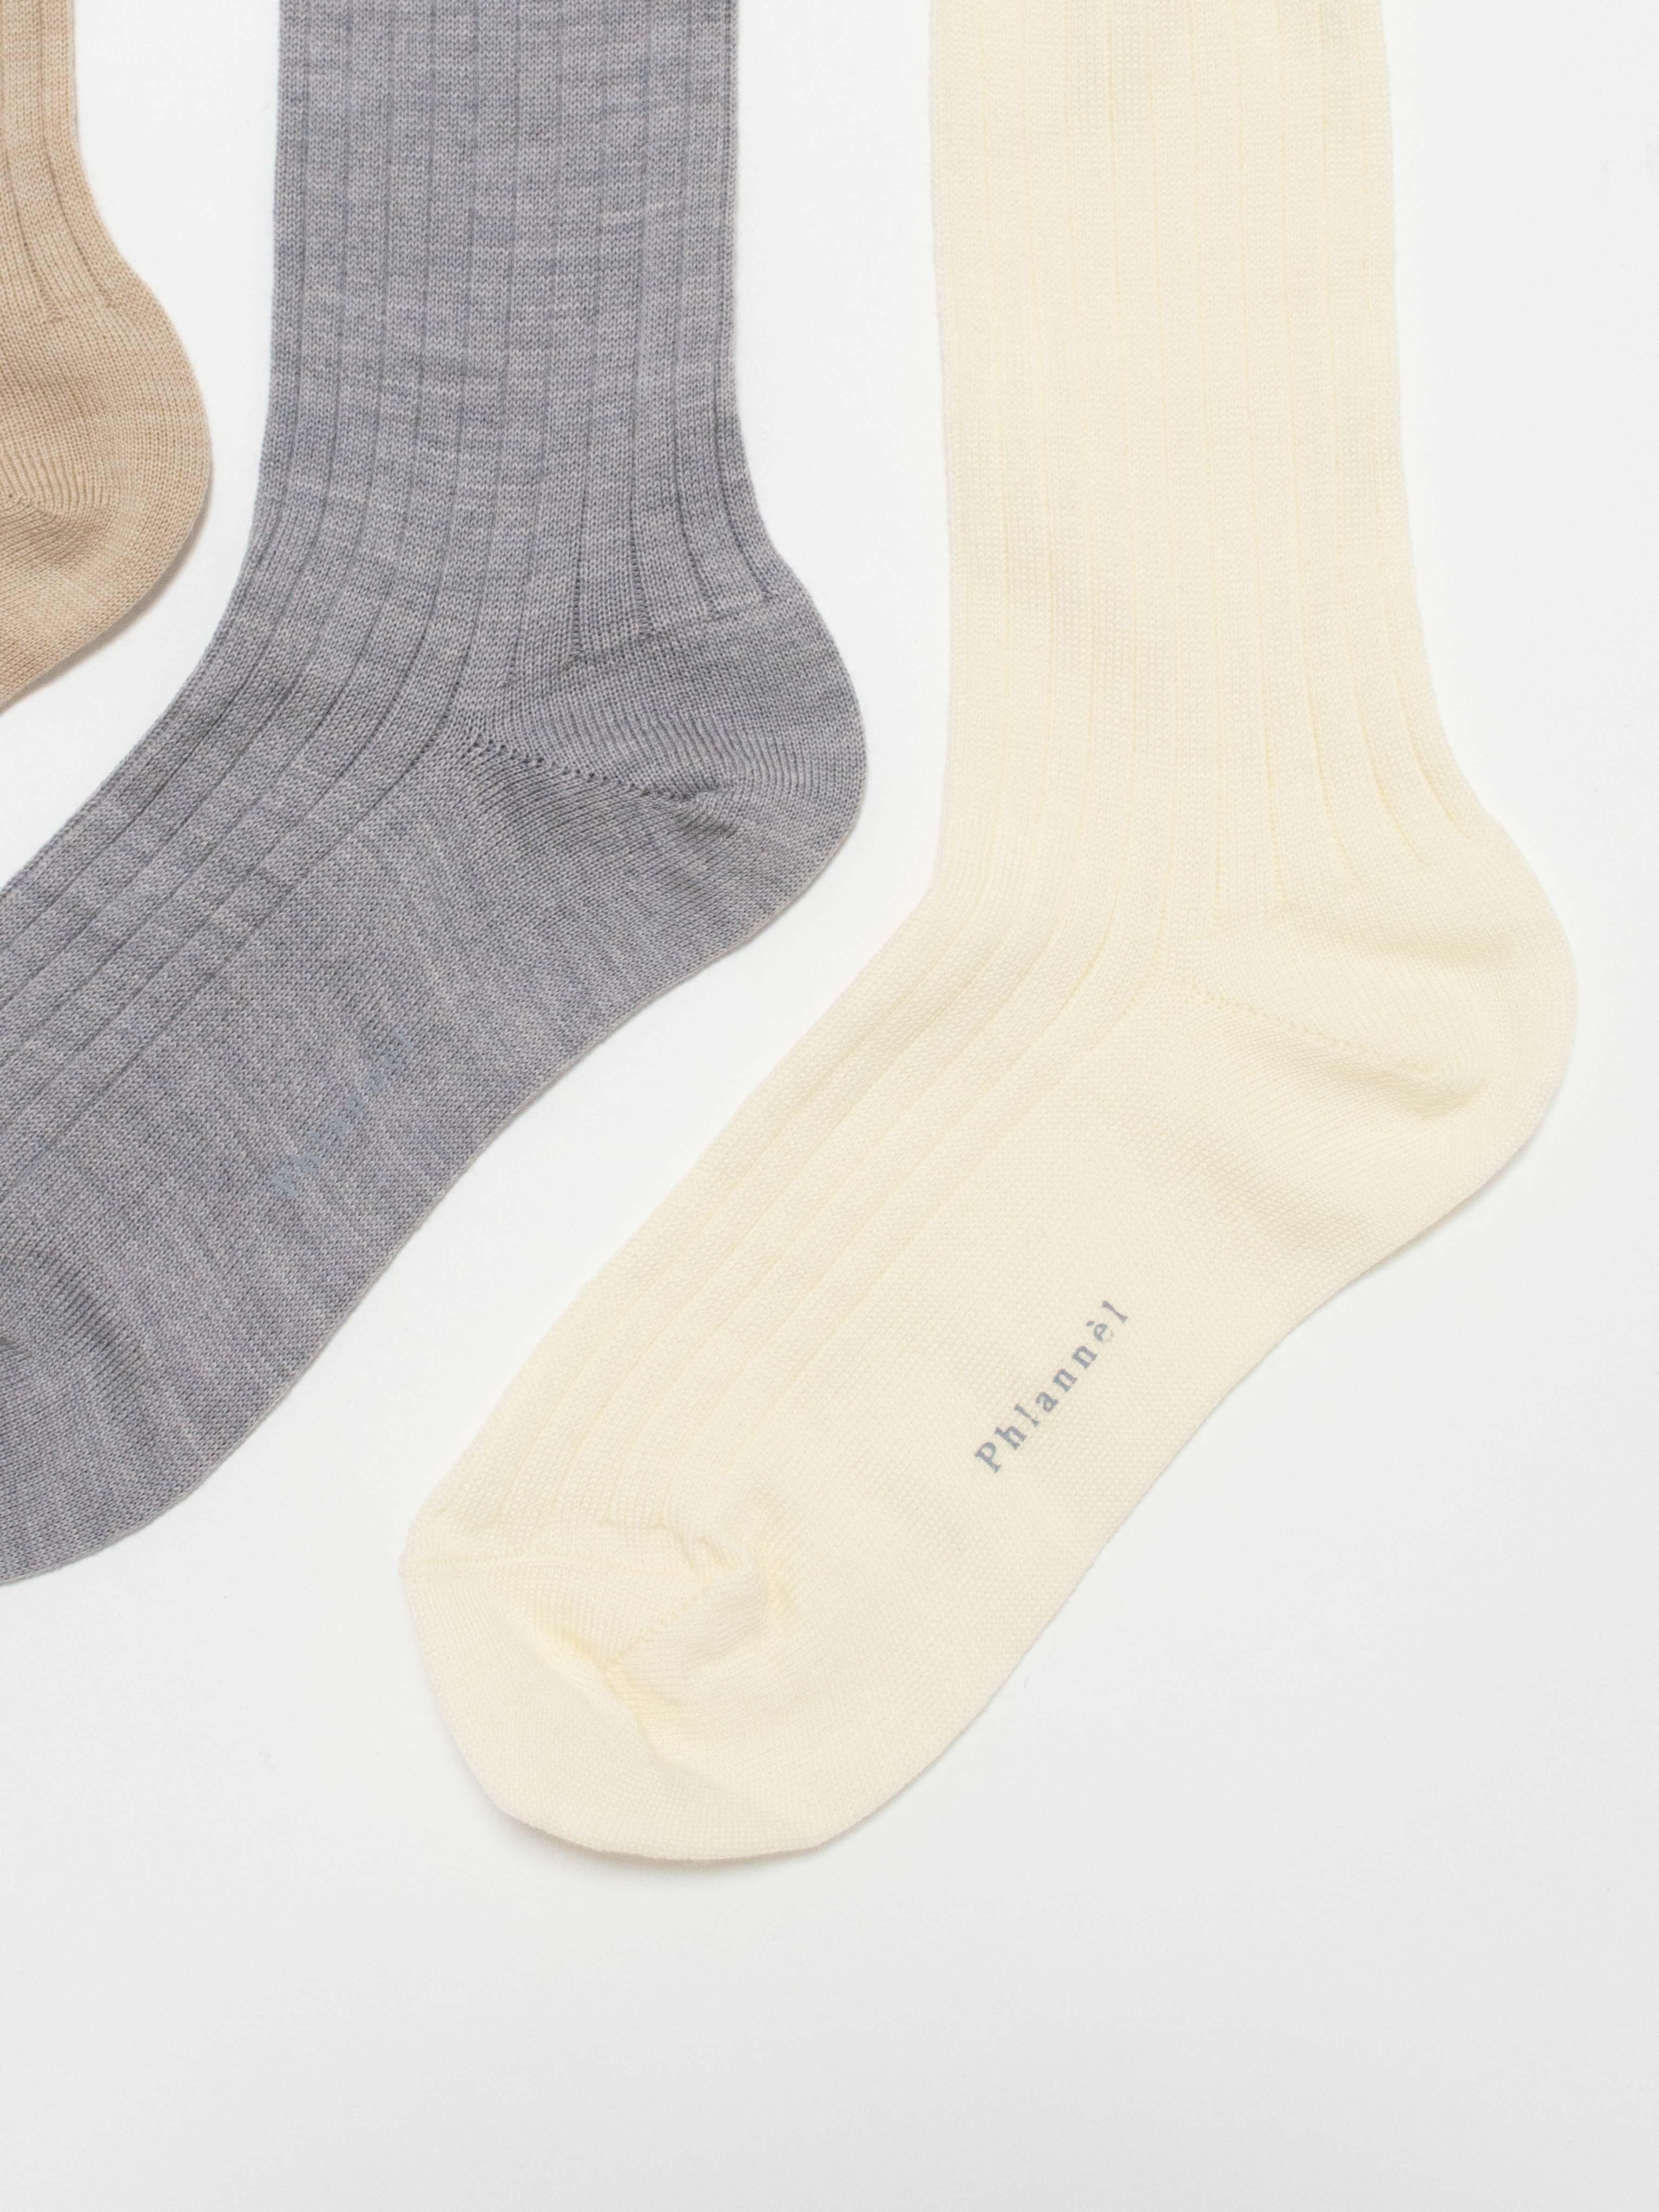 Namu Shop - Phlannel Women's 3-Pack Wool Socks (Gray, Ivory, Beige)